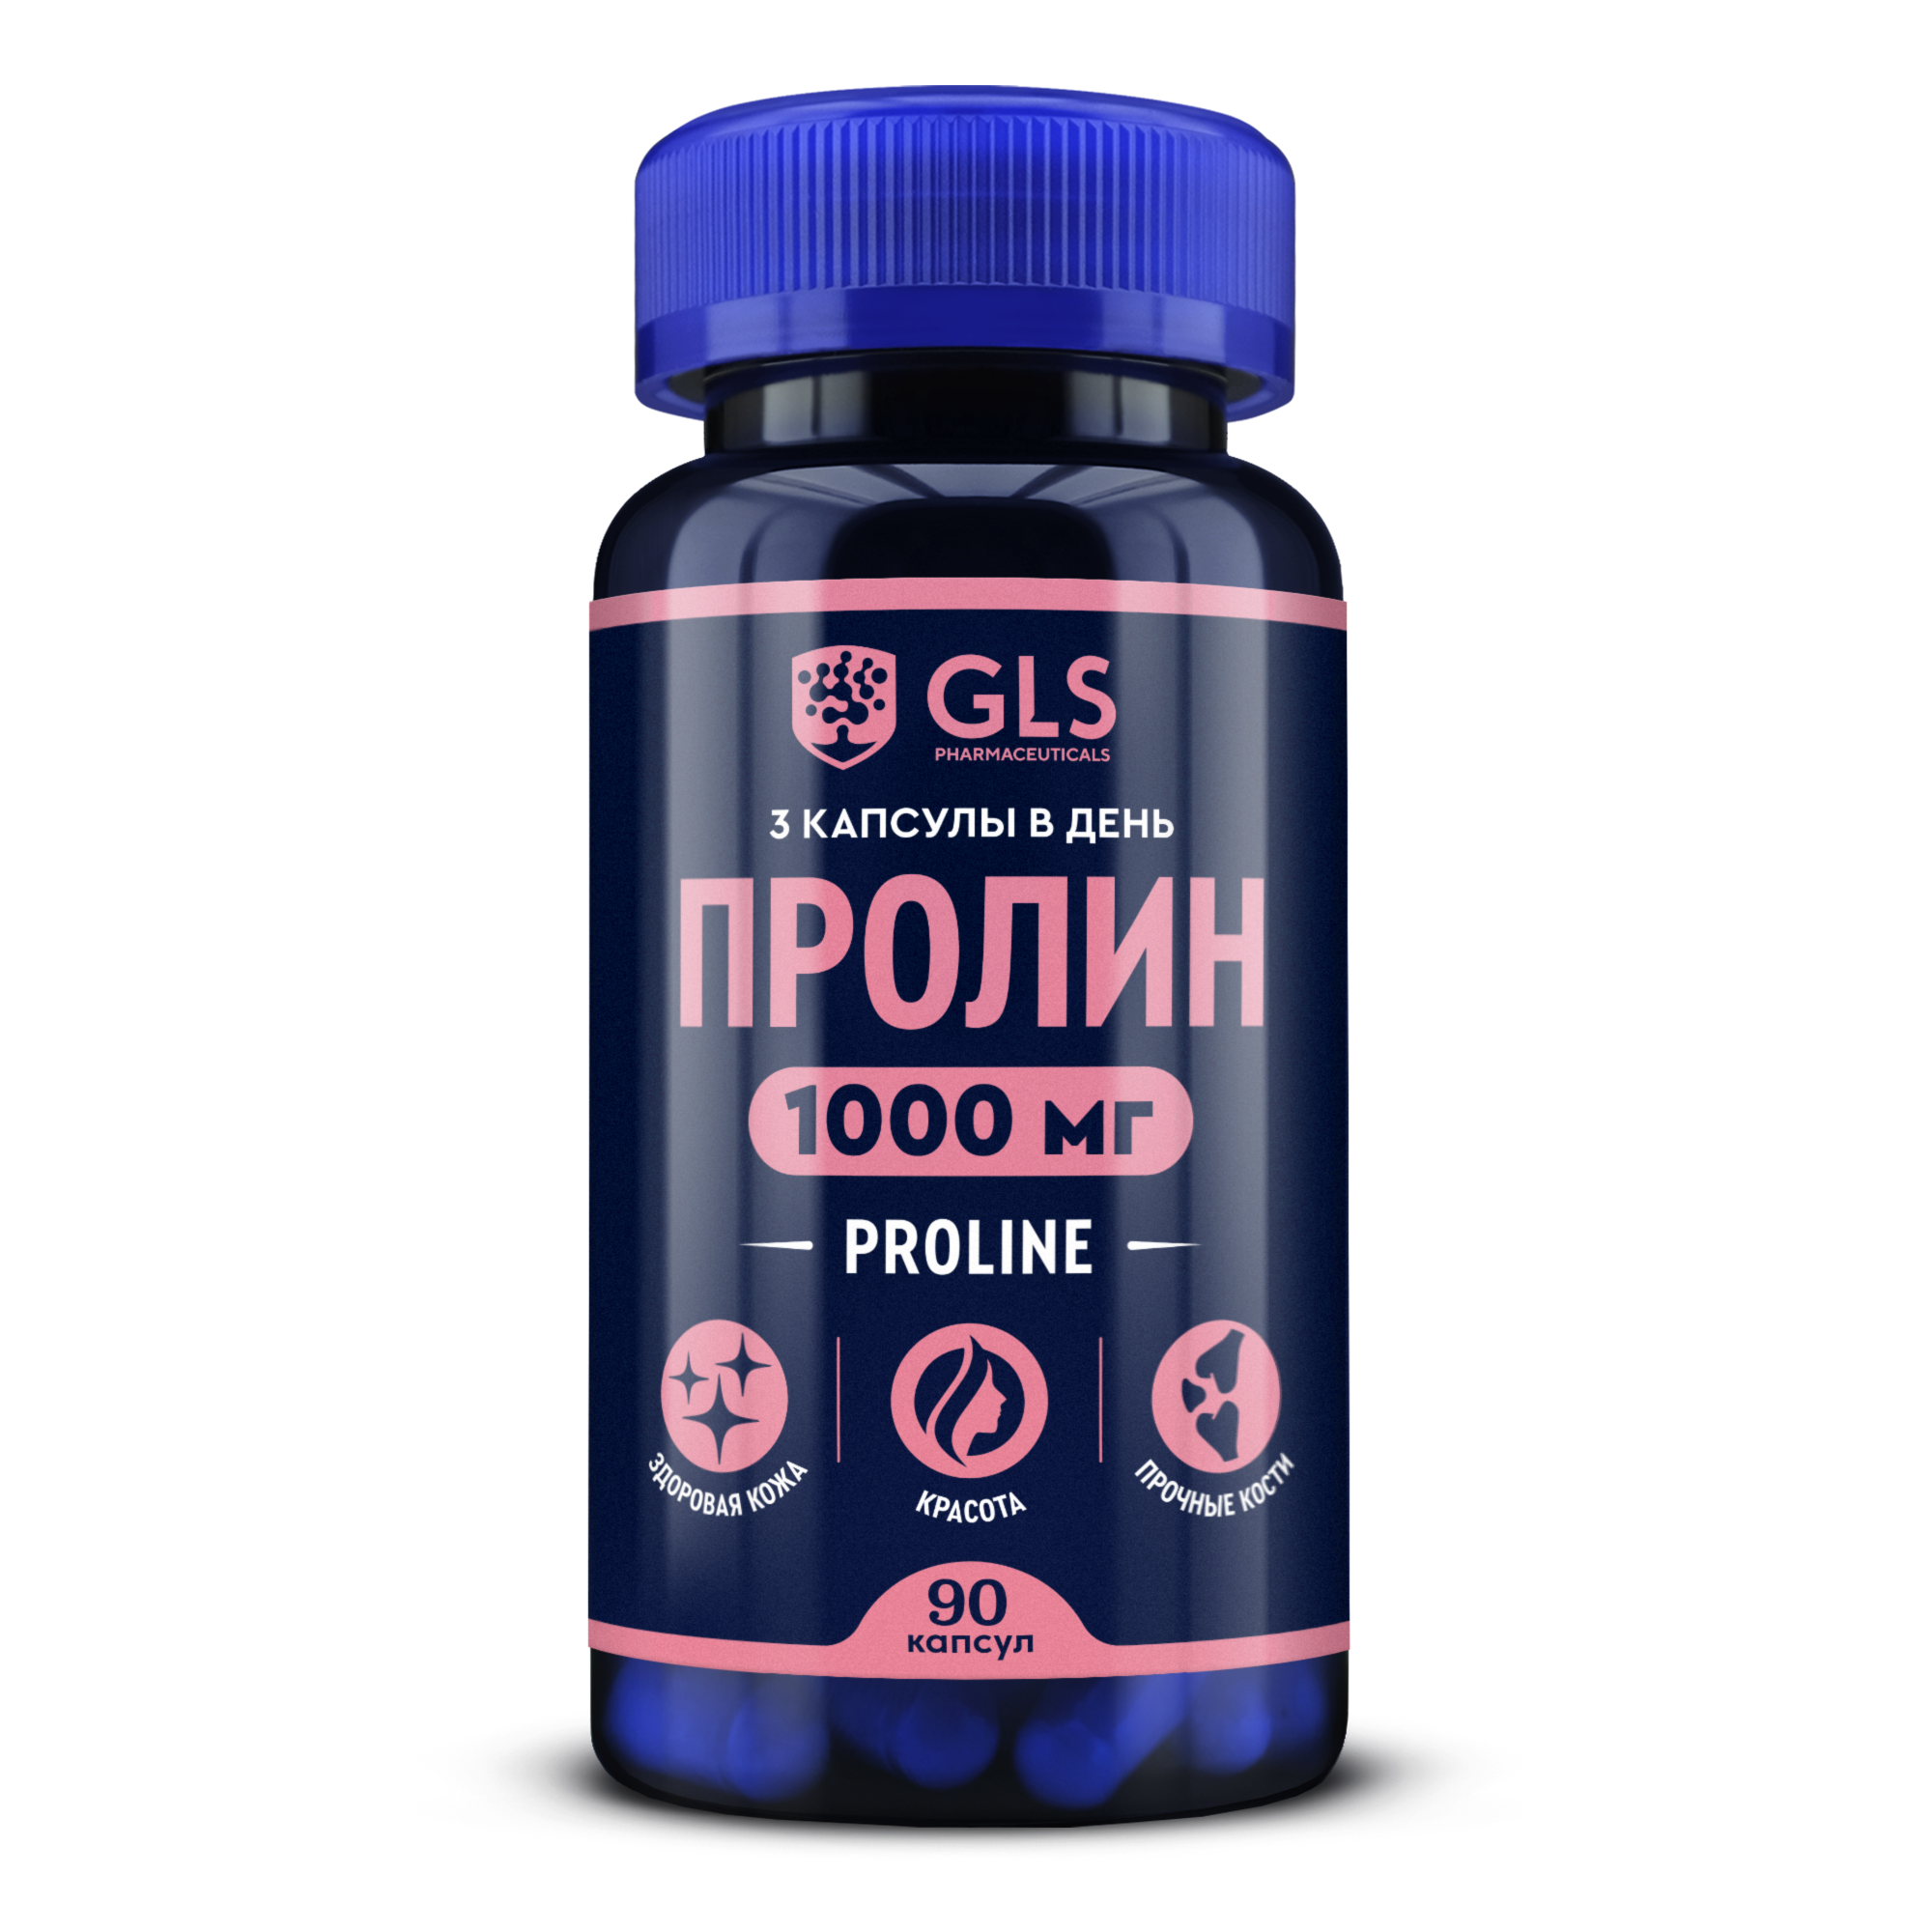 Аминокислота  Пролин (L-Proline) 1000 GLS pharmaceuticals, 90 капсул